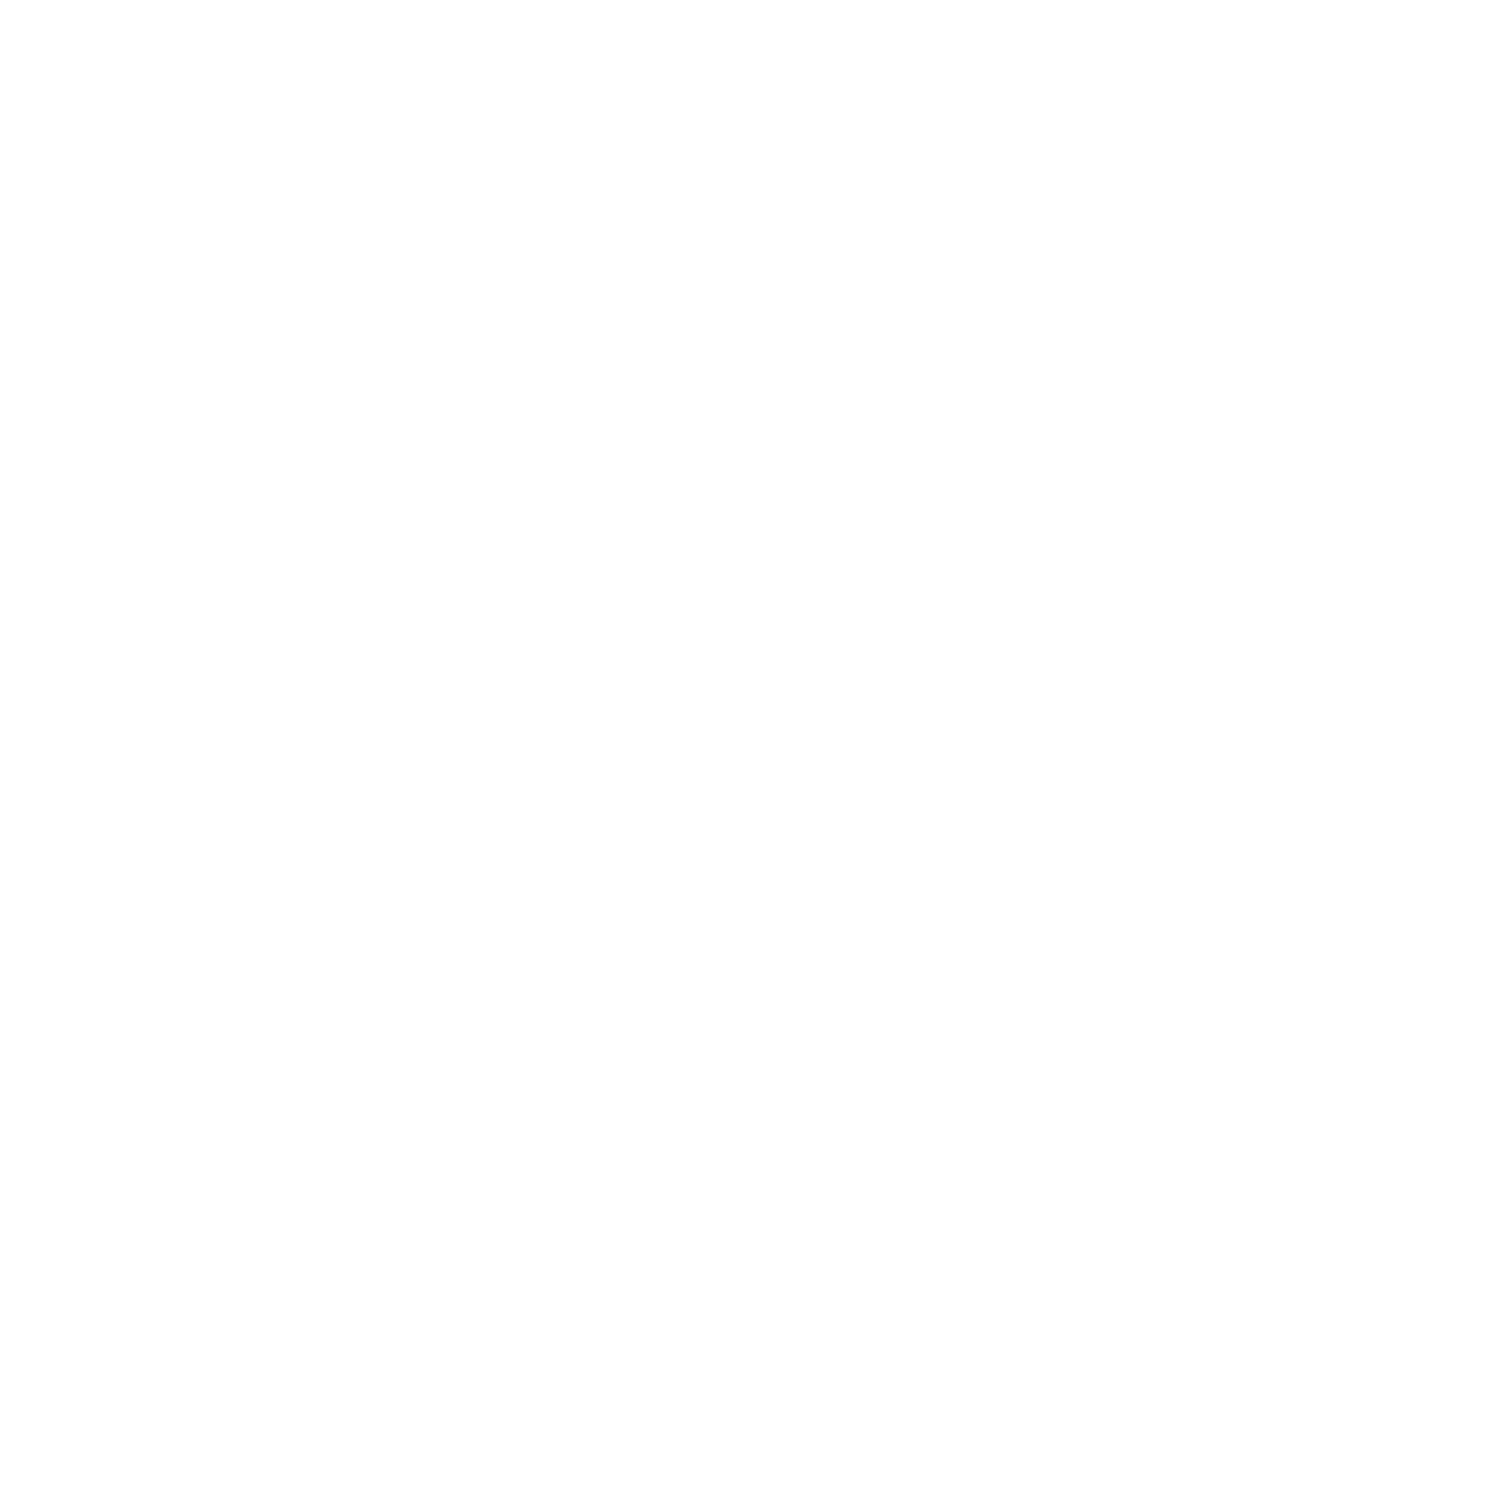 Elementals World